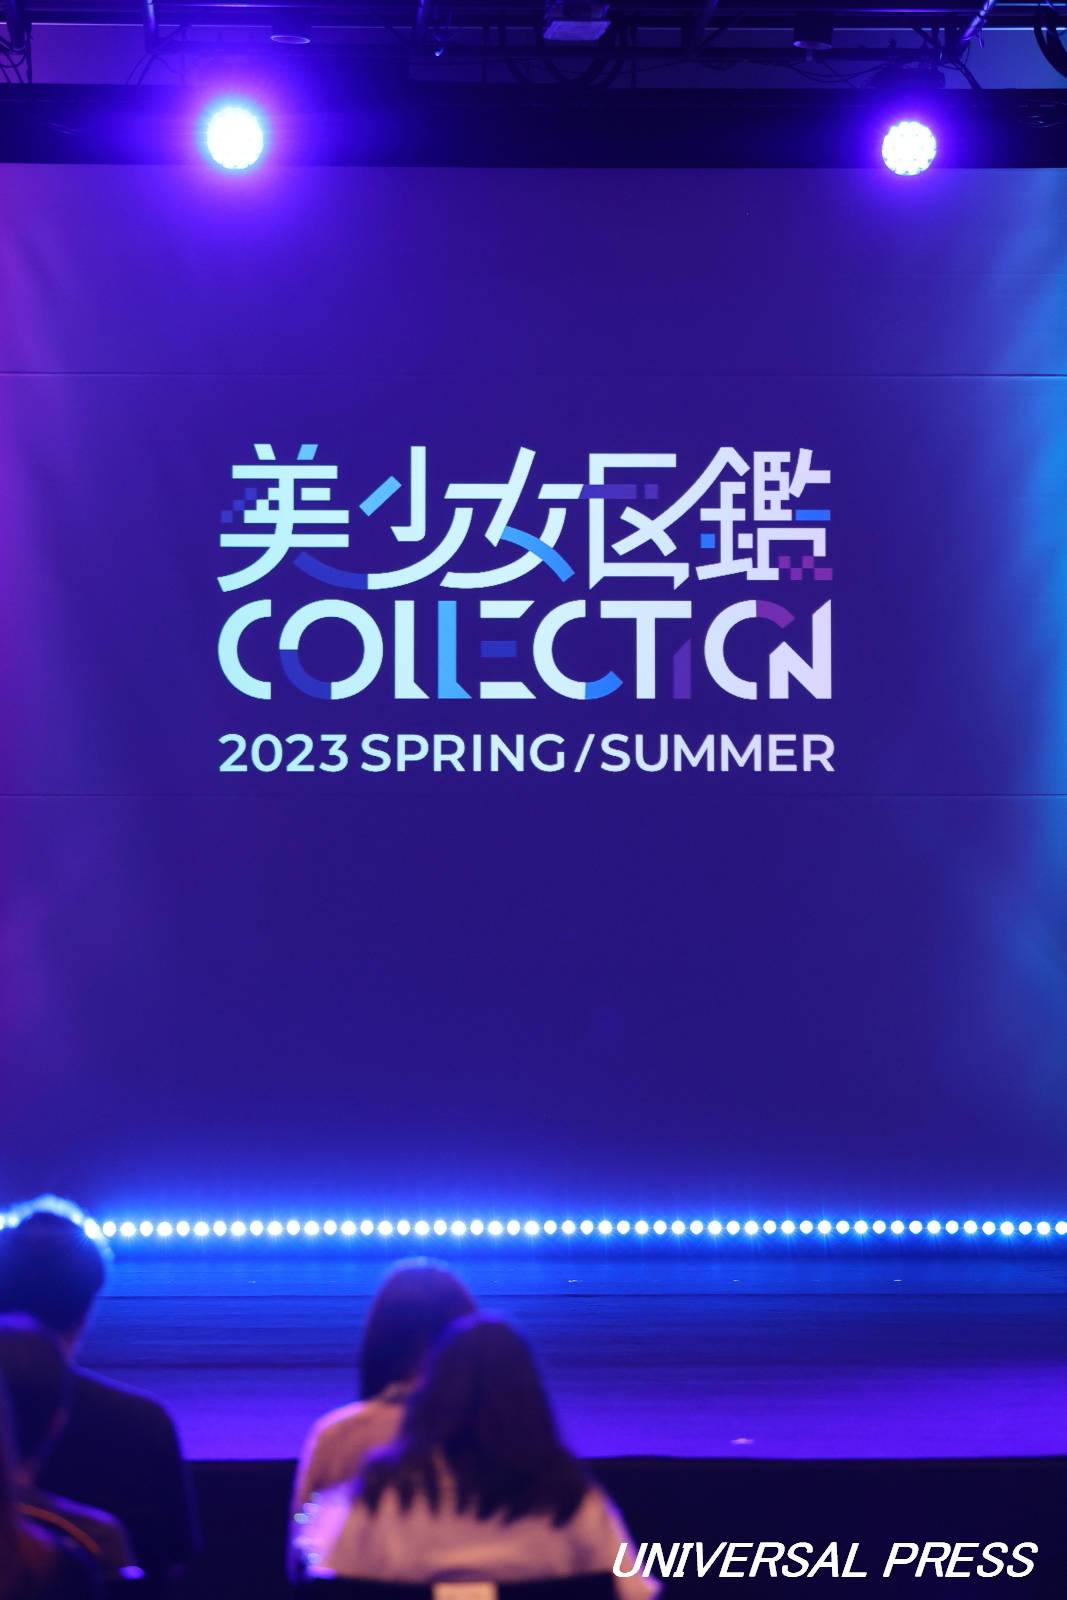 「美少女図鑑COLLECTION2023 SPRING/SUMMER」